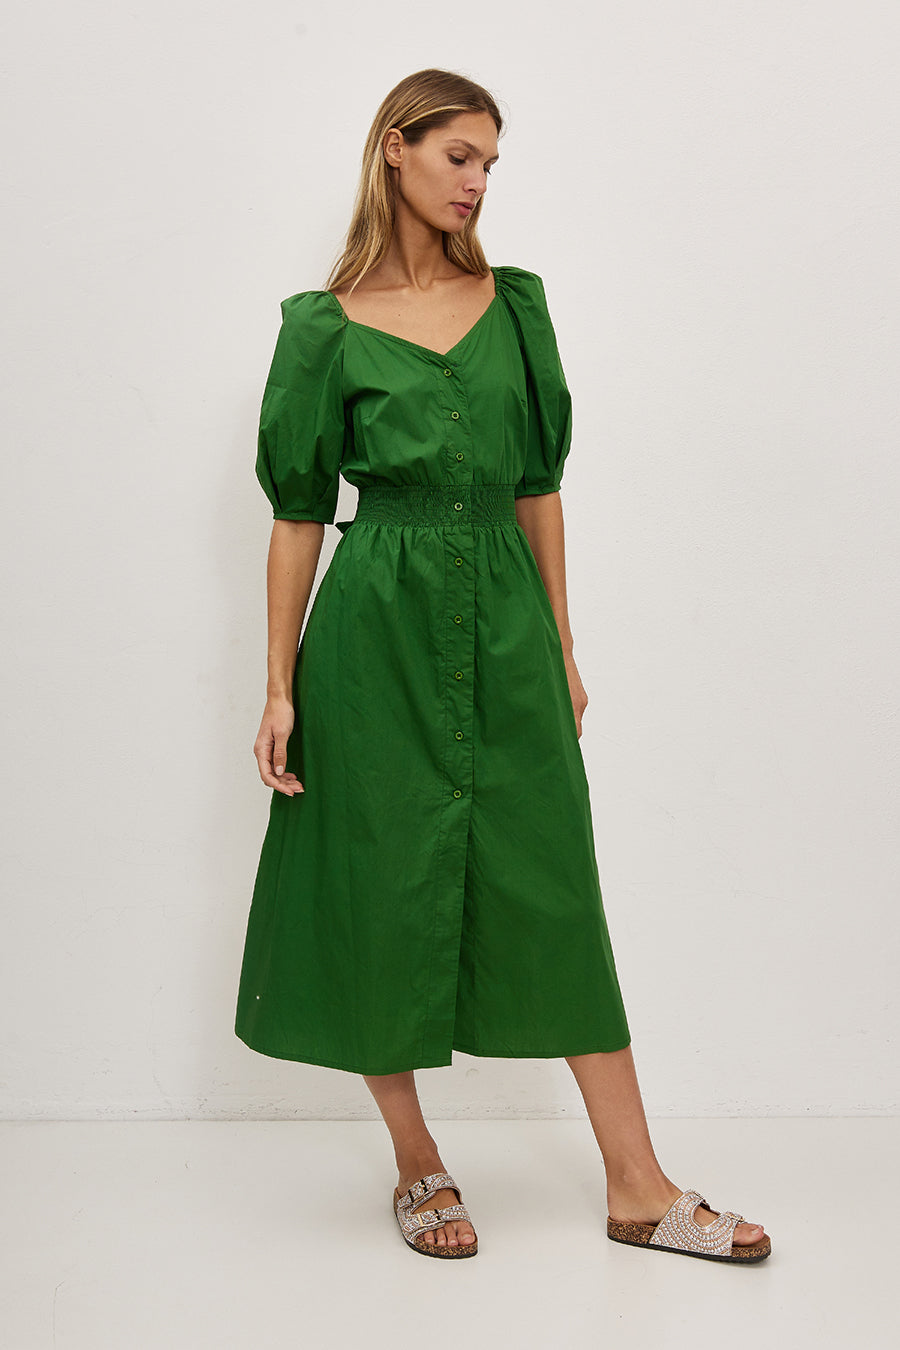 Γυναικείο φόρεμα Eveline, Πράσινο 2